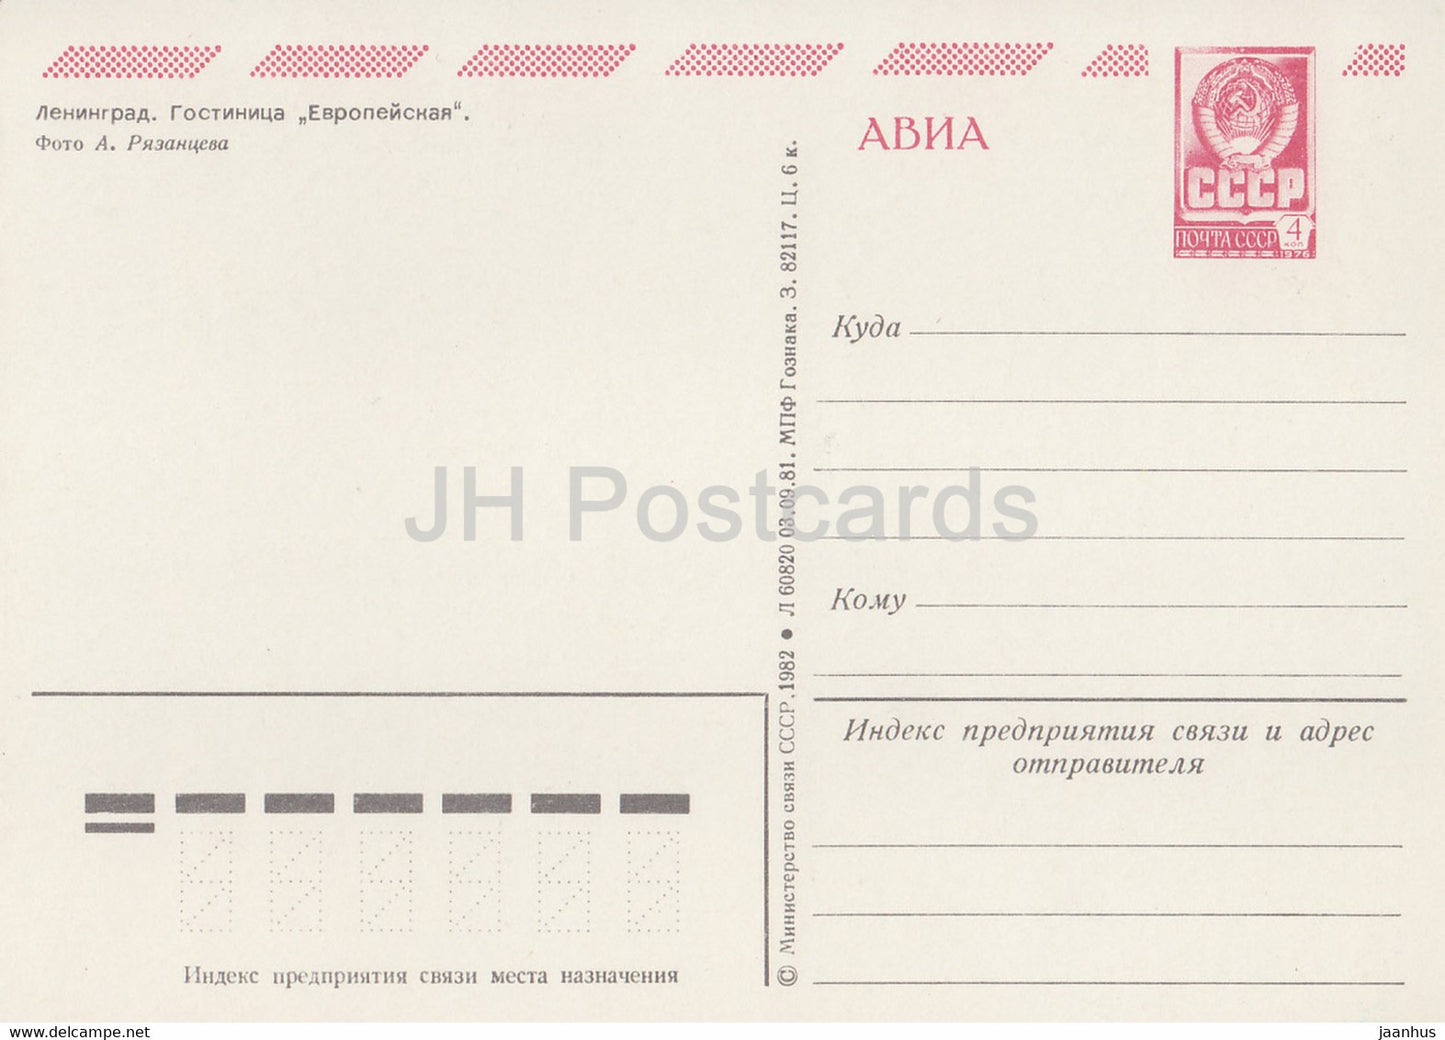 Leningrad - St Petersburg - hotel Evropeyskaya - bus Ikarus - AVIA - postal stationery - 1982 - Russia USSR - unused